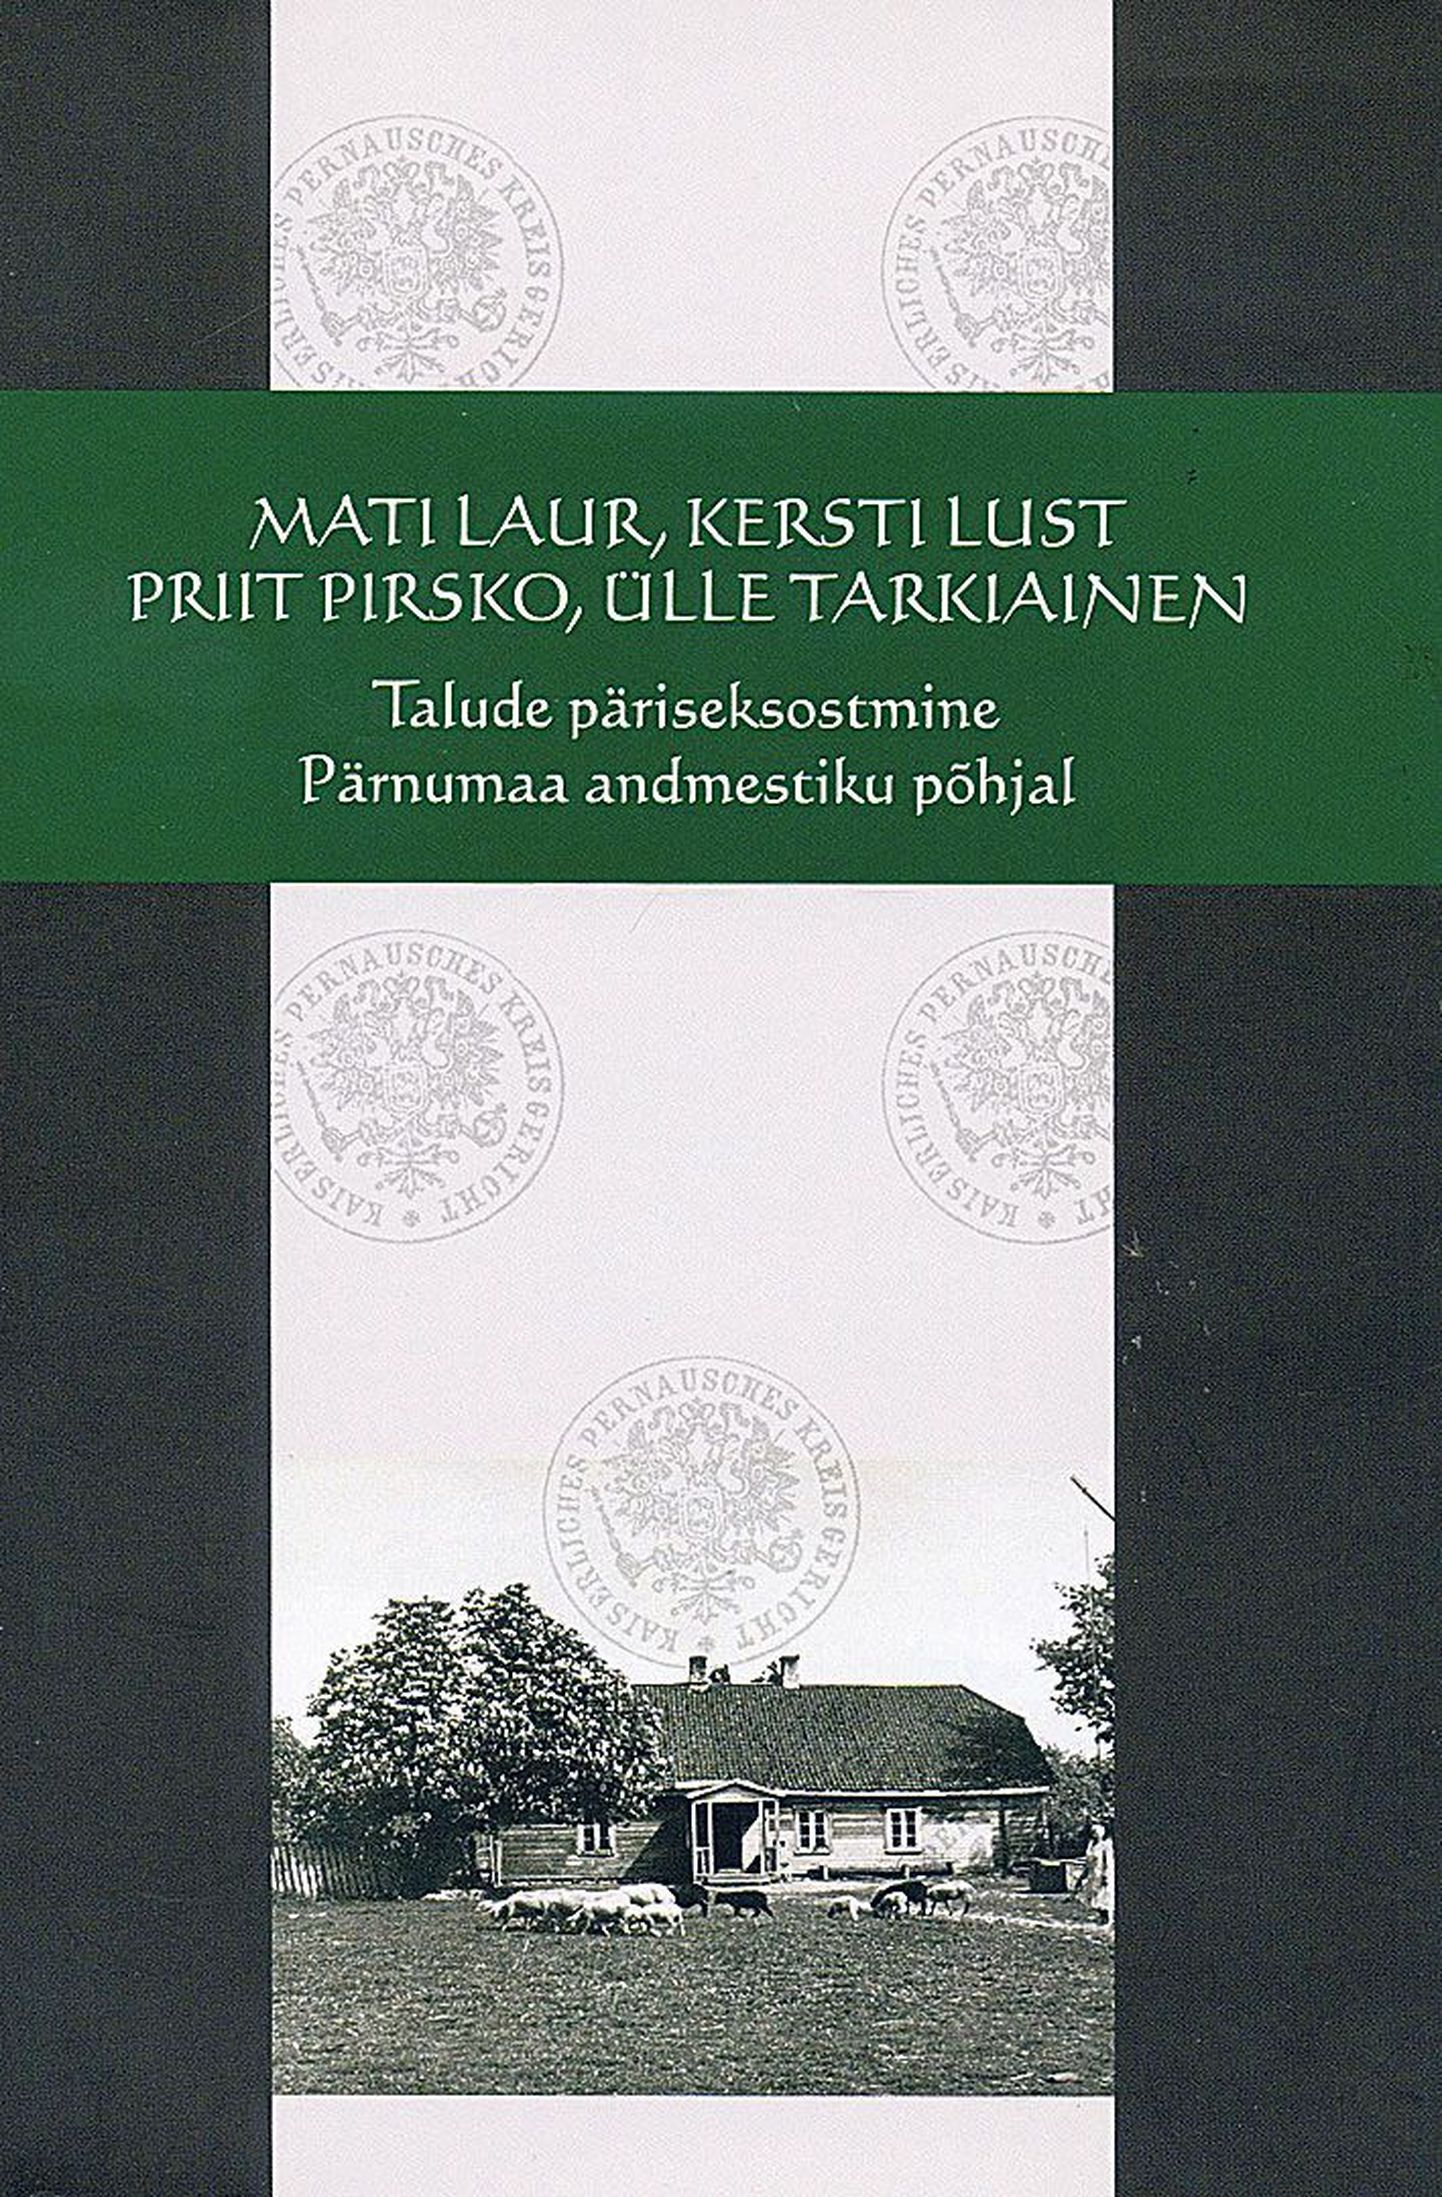 Mati Laur, Kersti Lust, Priit Pirsko, Ülle Tarkiainen,
 «Talude päriseks-ostmine», 
Eesti ajalooarhiiv, Tartu 2014, 
160 lk.